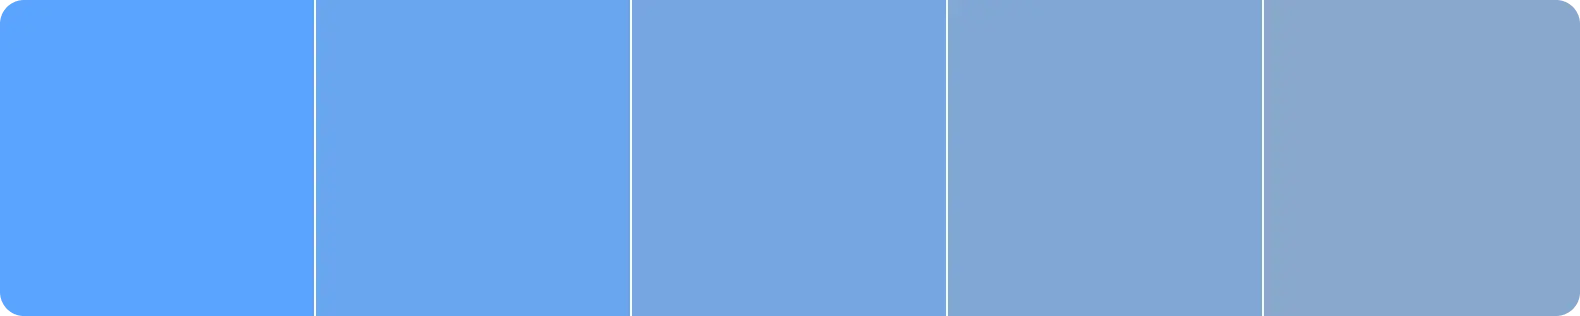 Palette de couleurs montrant différentes tonalités de la même couleur de bleu.